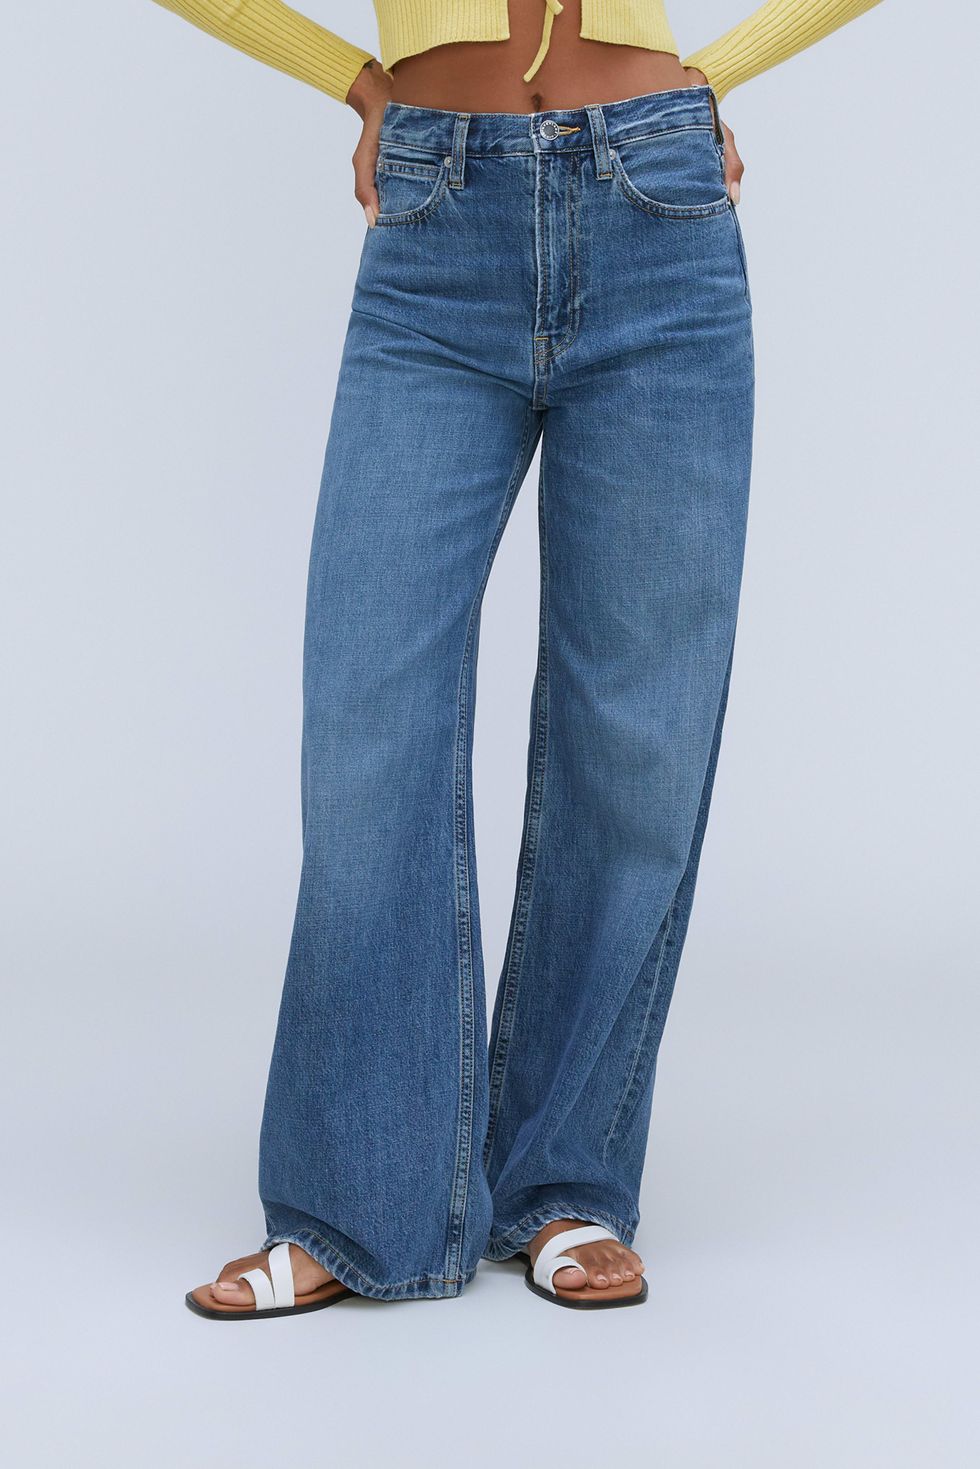 Best wide-leg denim jeans to buy in 2021 - Vogue Scandinavia